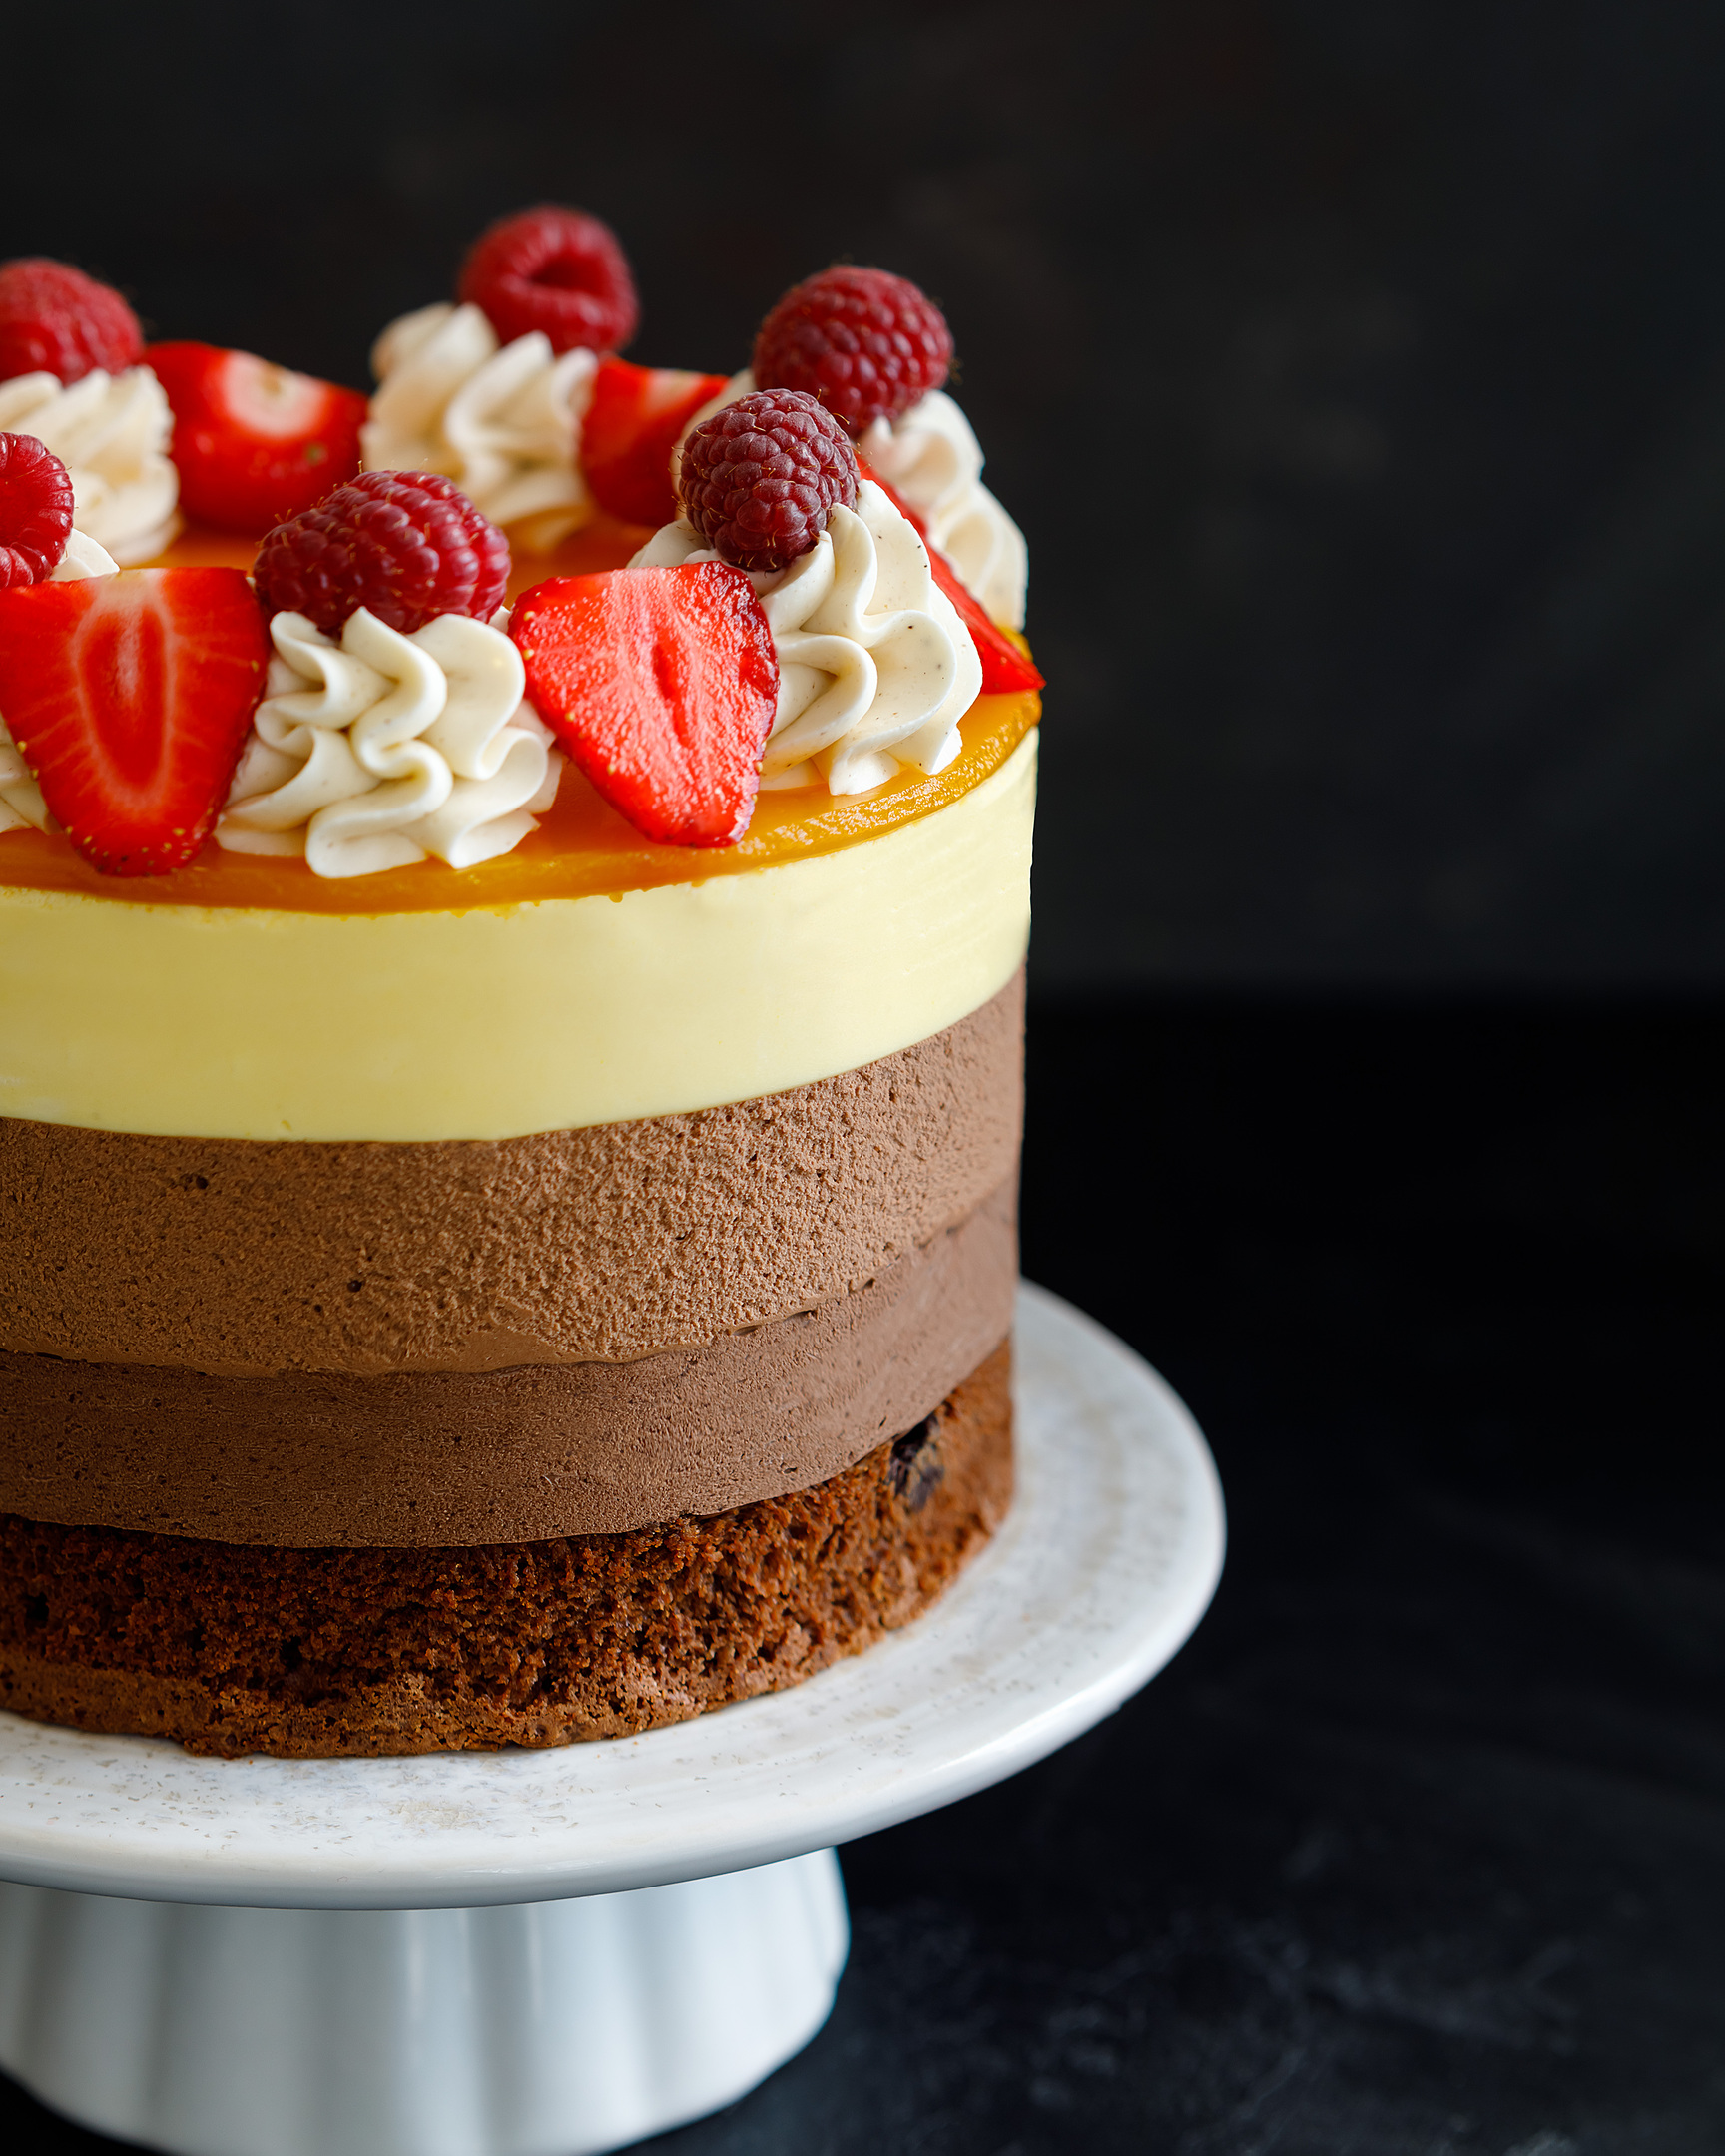 Шоколадова торта. В средата на снимката е шоколадова торта на постамент от бяла керамика. Върху него има ванилов крем, малини и ягоди. Можете да видите всеки слой от тортата!